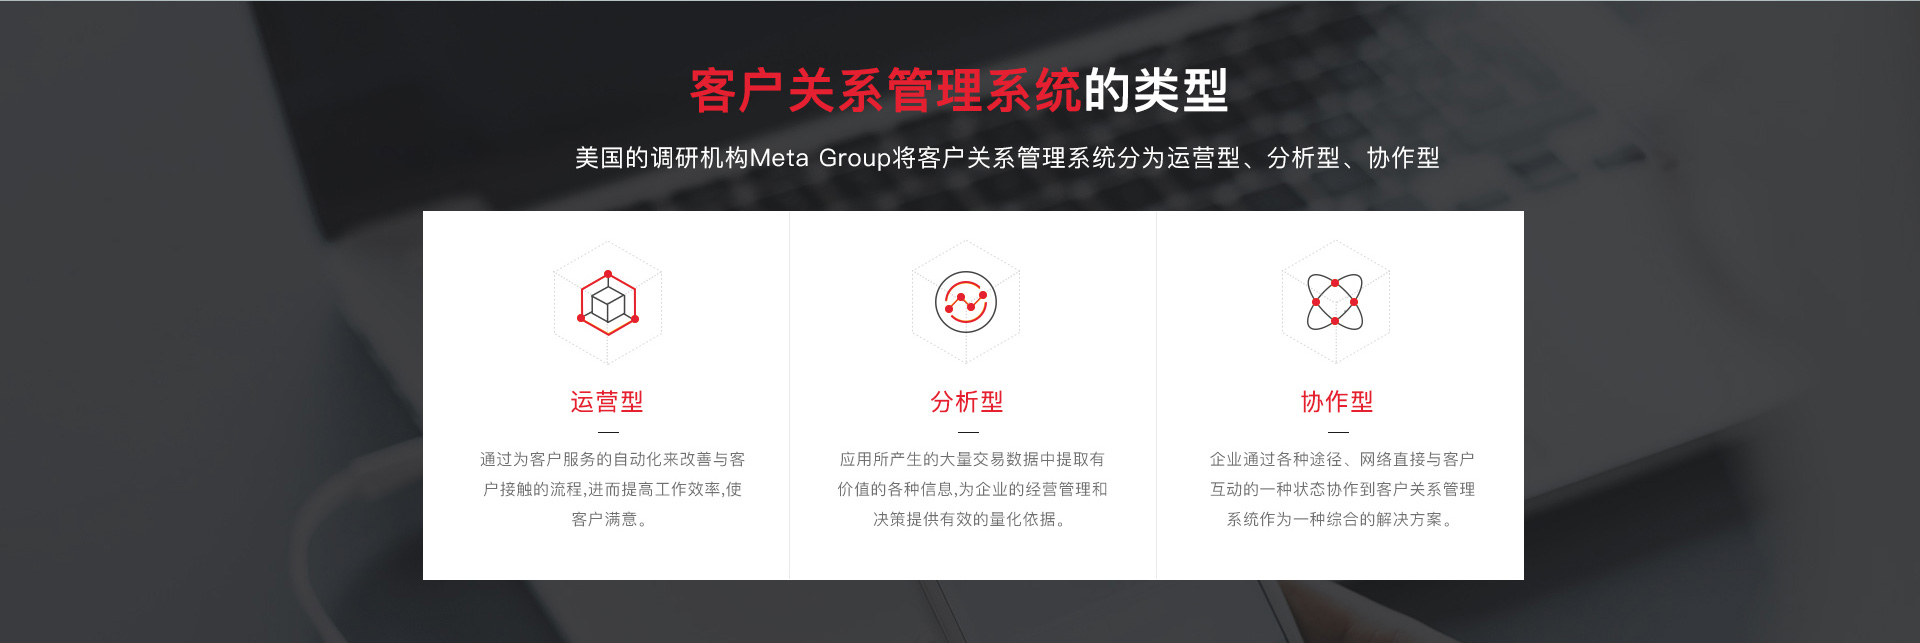 南京网络公司,南京CRM开发，南京CRM，南京网站建设，南京客户管理系统